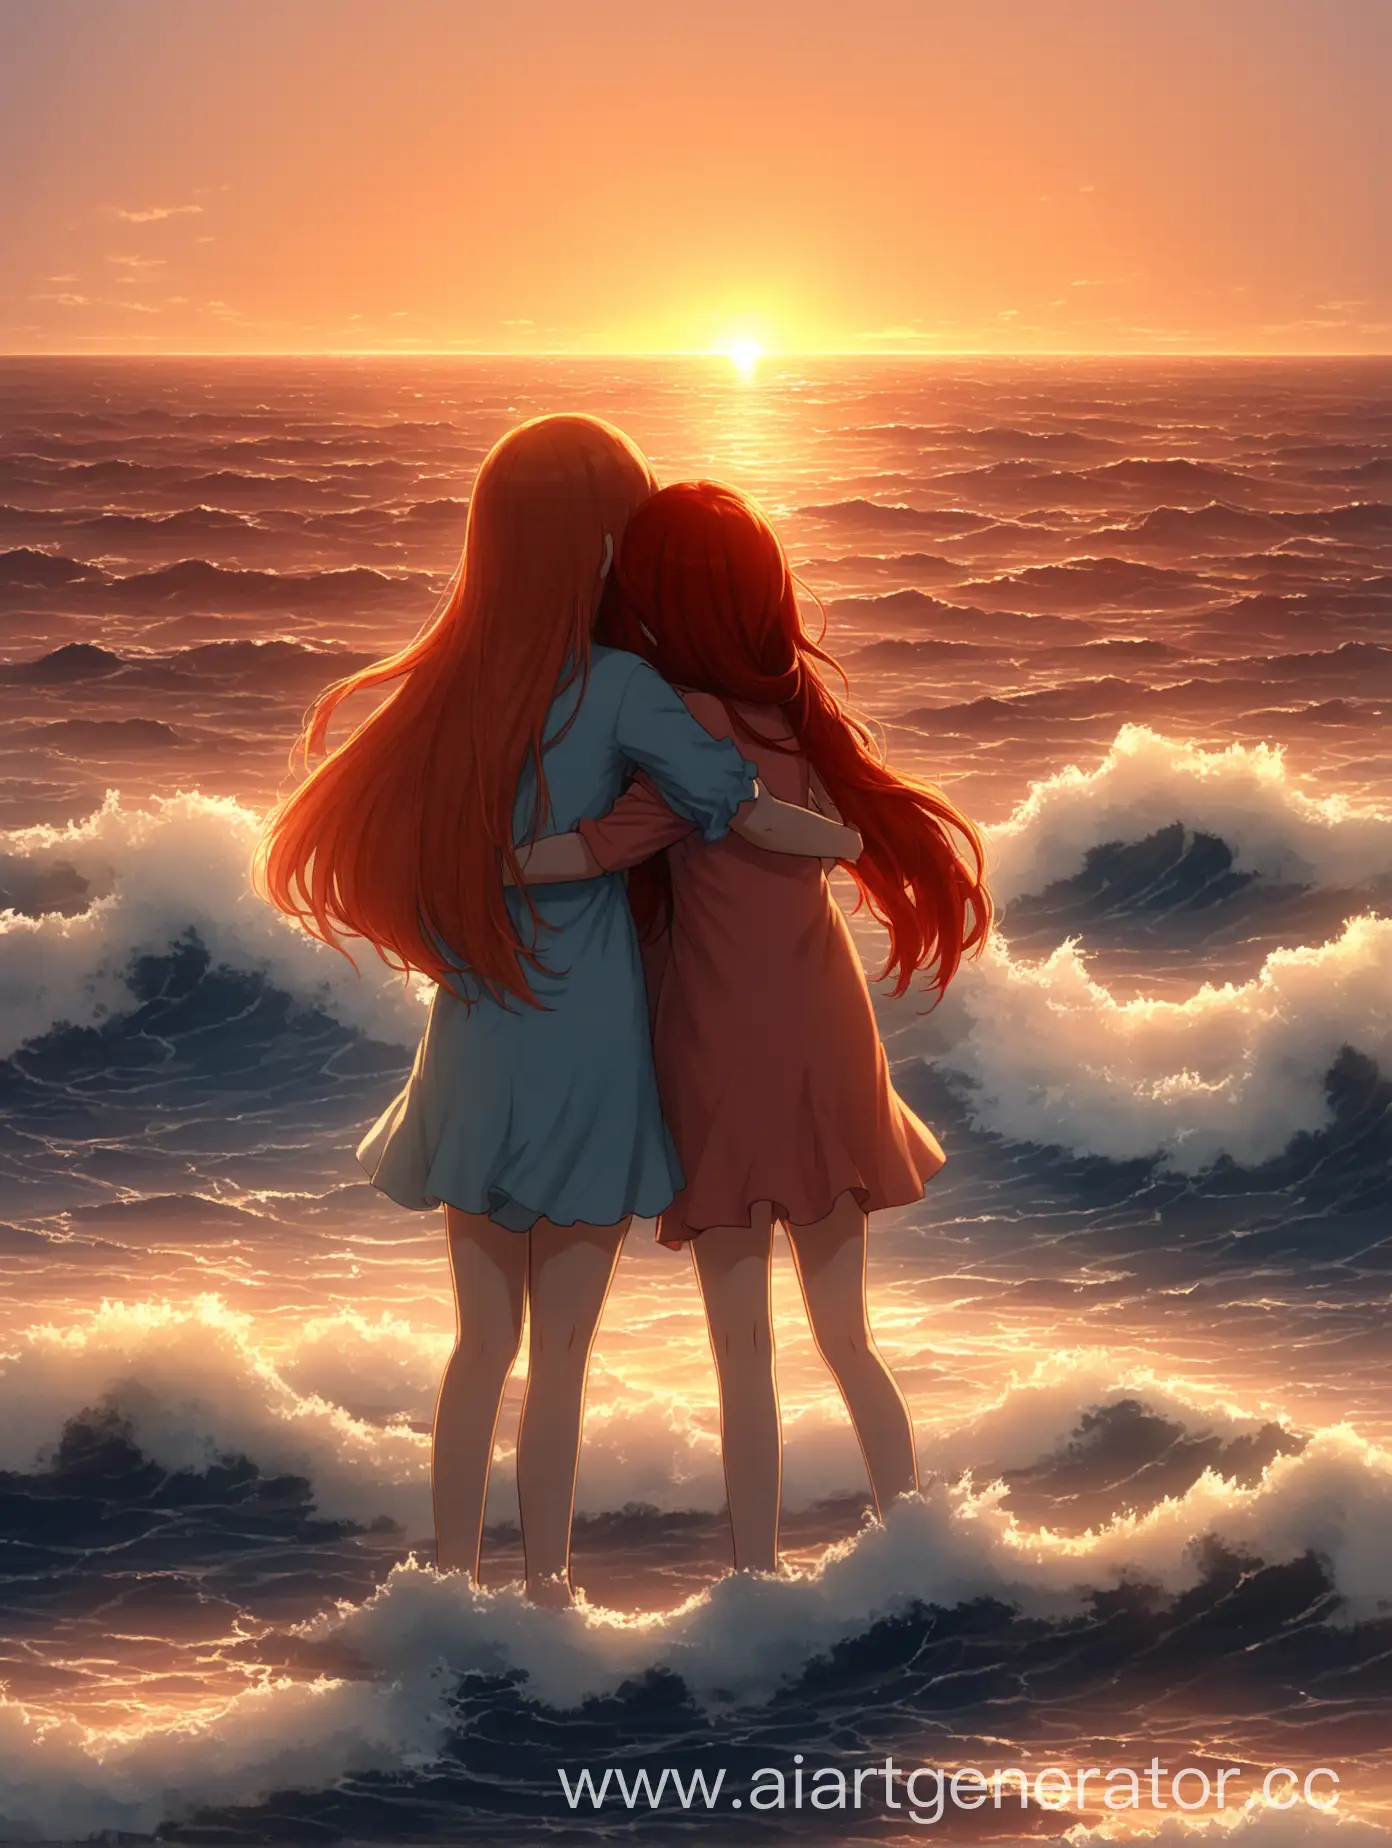 двое девушек, у одной девушки красные длинные волосы, у второй короткие каштановые волосы, девушки обнимаются, одна девушка маленького роста, вторая девушка высокого роста, море, закат, волны